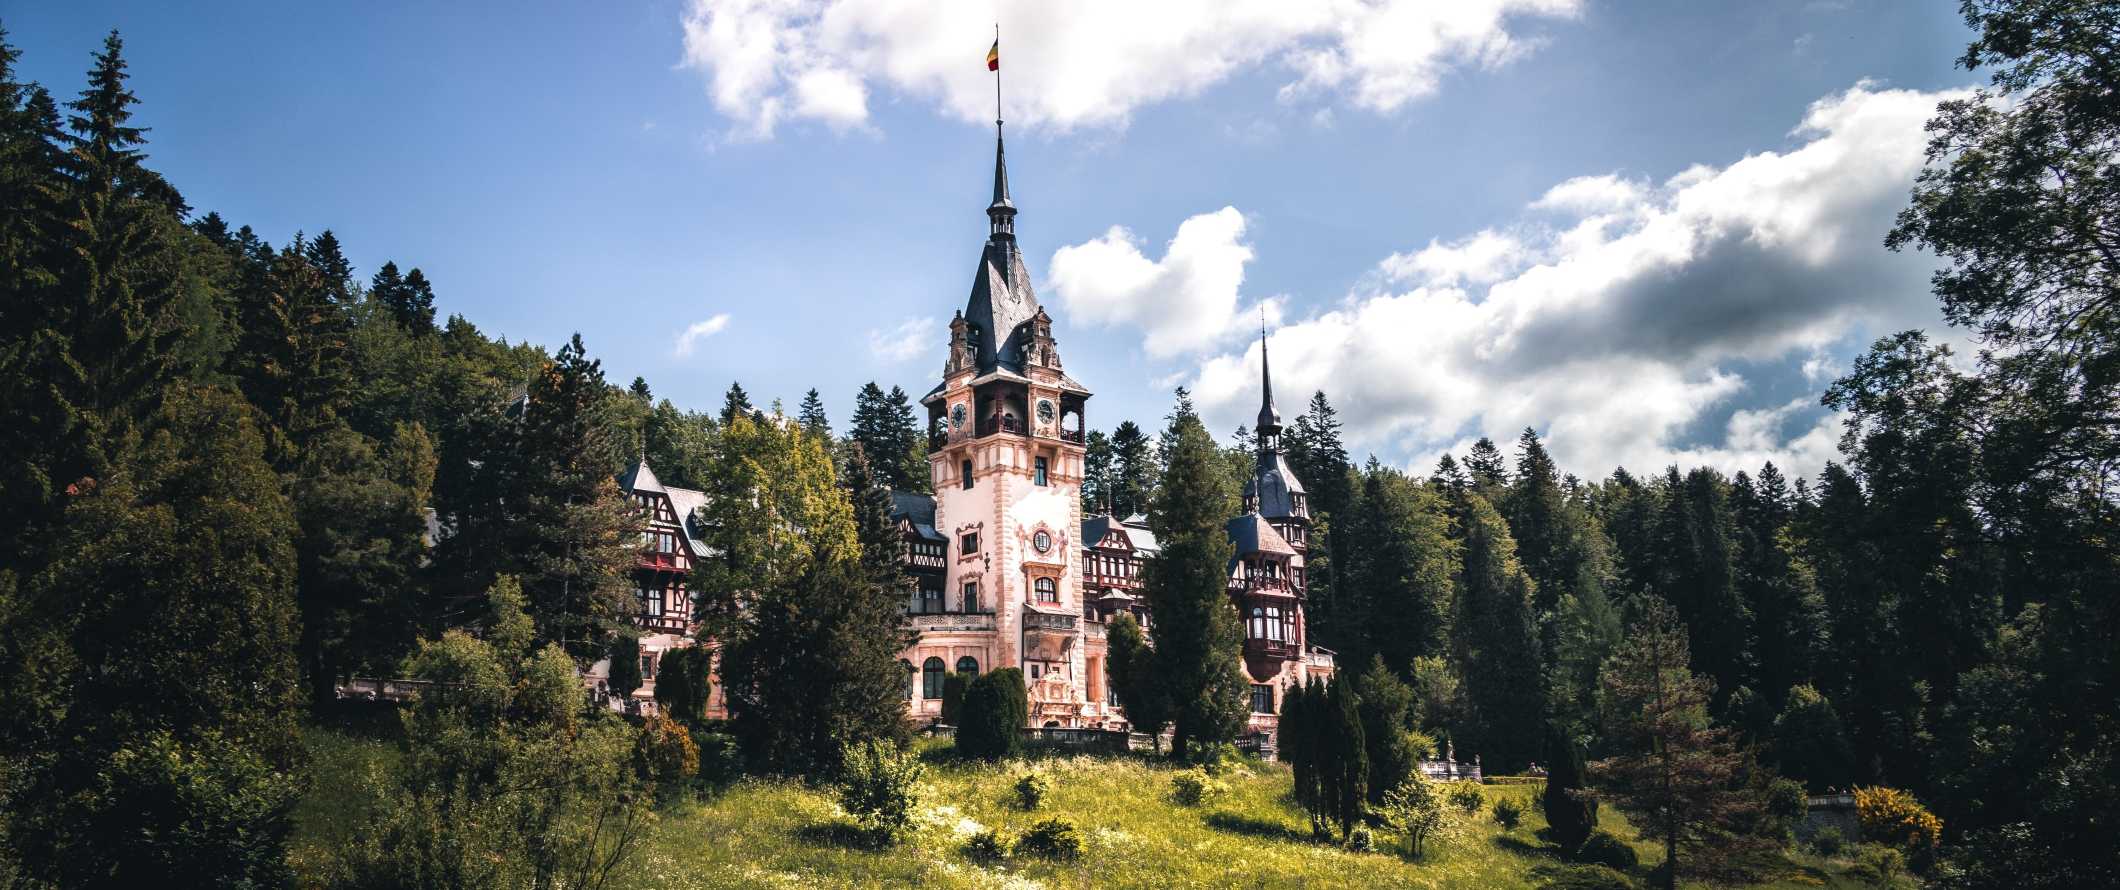 Castelo de Peles de conto de fadas cercado por árvores na Romênia.